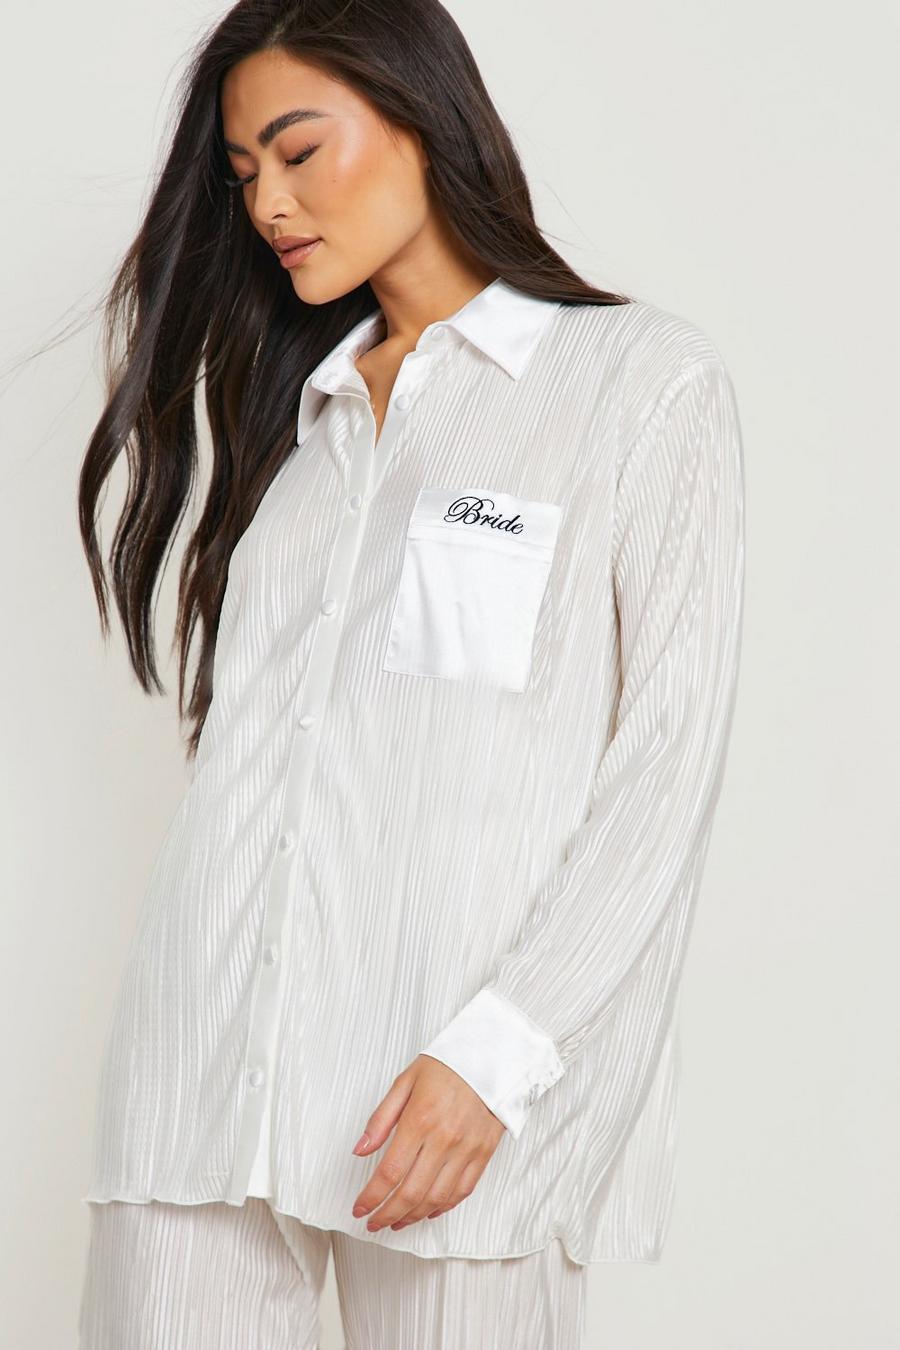 Pijama de pantalón largo plisado con bordado Bride, White bianco